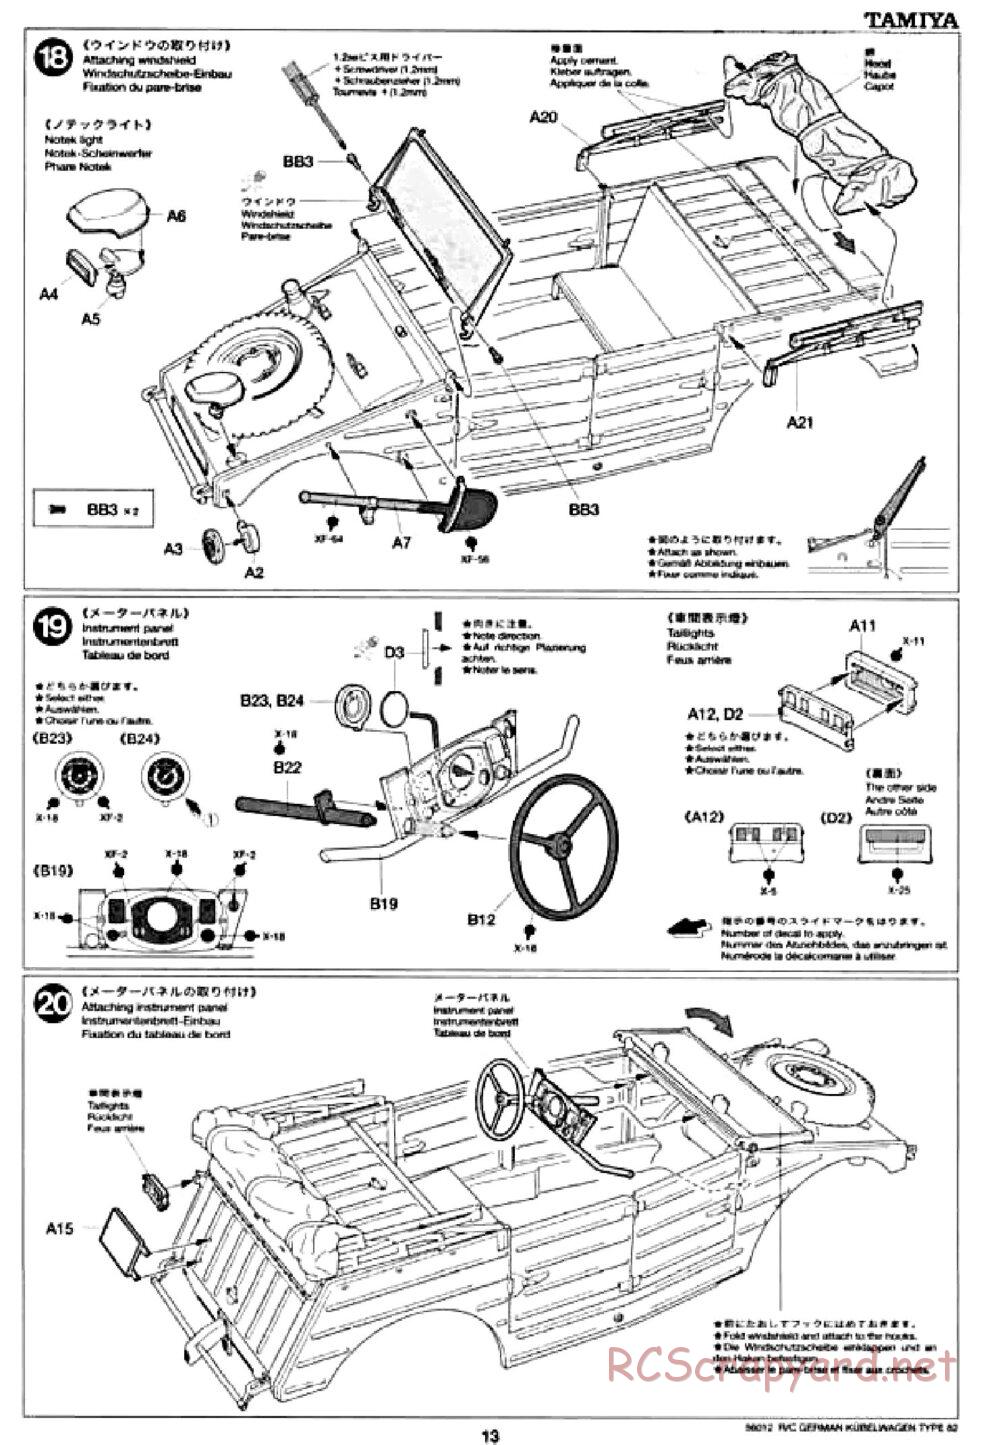 Tamiya - Kubelwagen Type 82 Chassis - Manual - Page 13